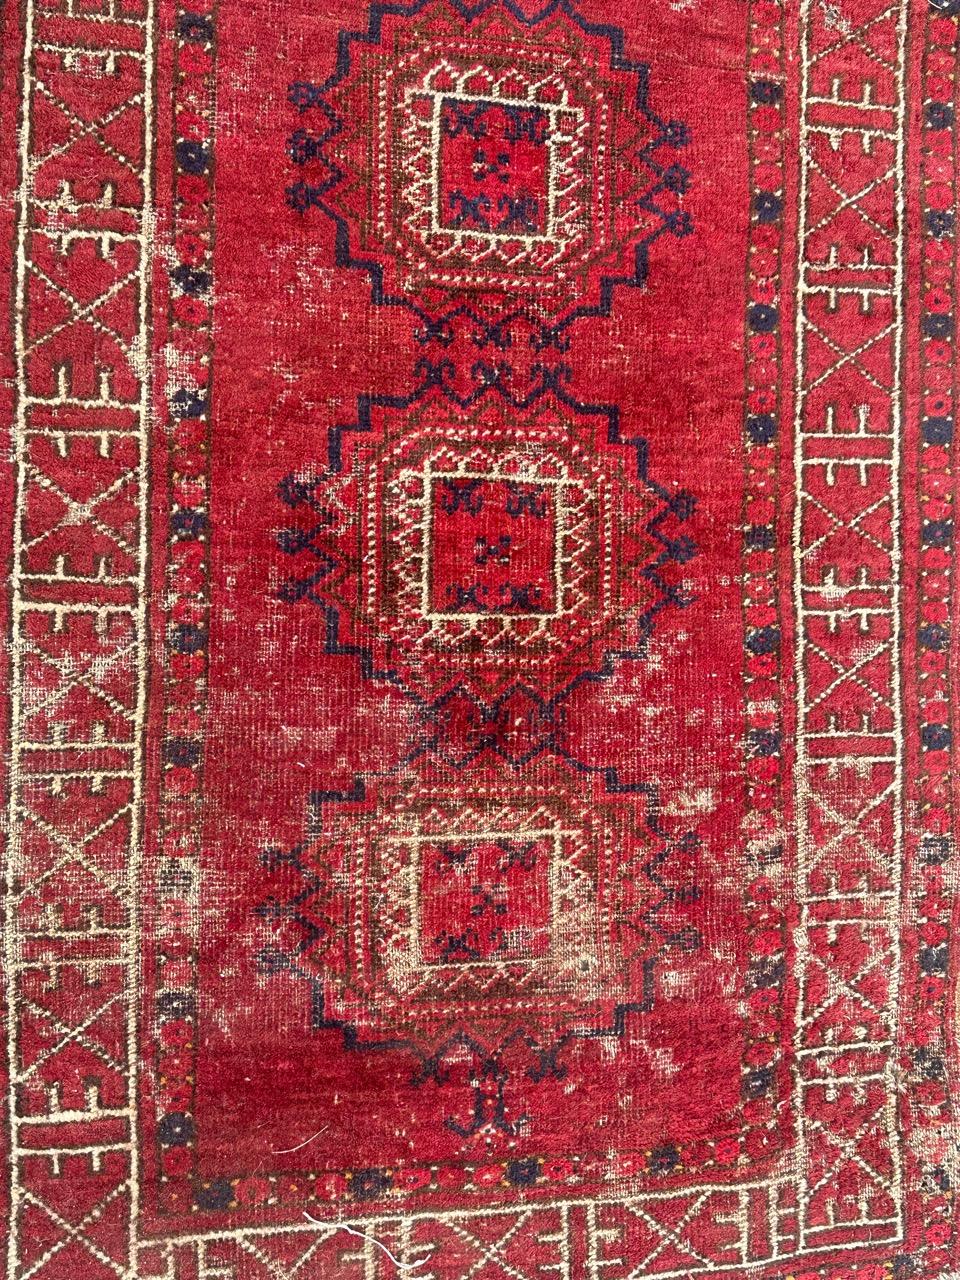 Schöner antiker turkmenischer Stammesteppich mit geometrischem Muster und schönen Naturfarben in rot, braun, blau und weiß, viele Gebrauchsspuren und kleine Beschädigungen, komplett handgeknüpft mit Wolle auf Wollbasis.

✨✨✨
